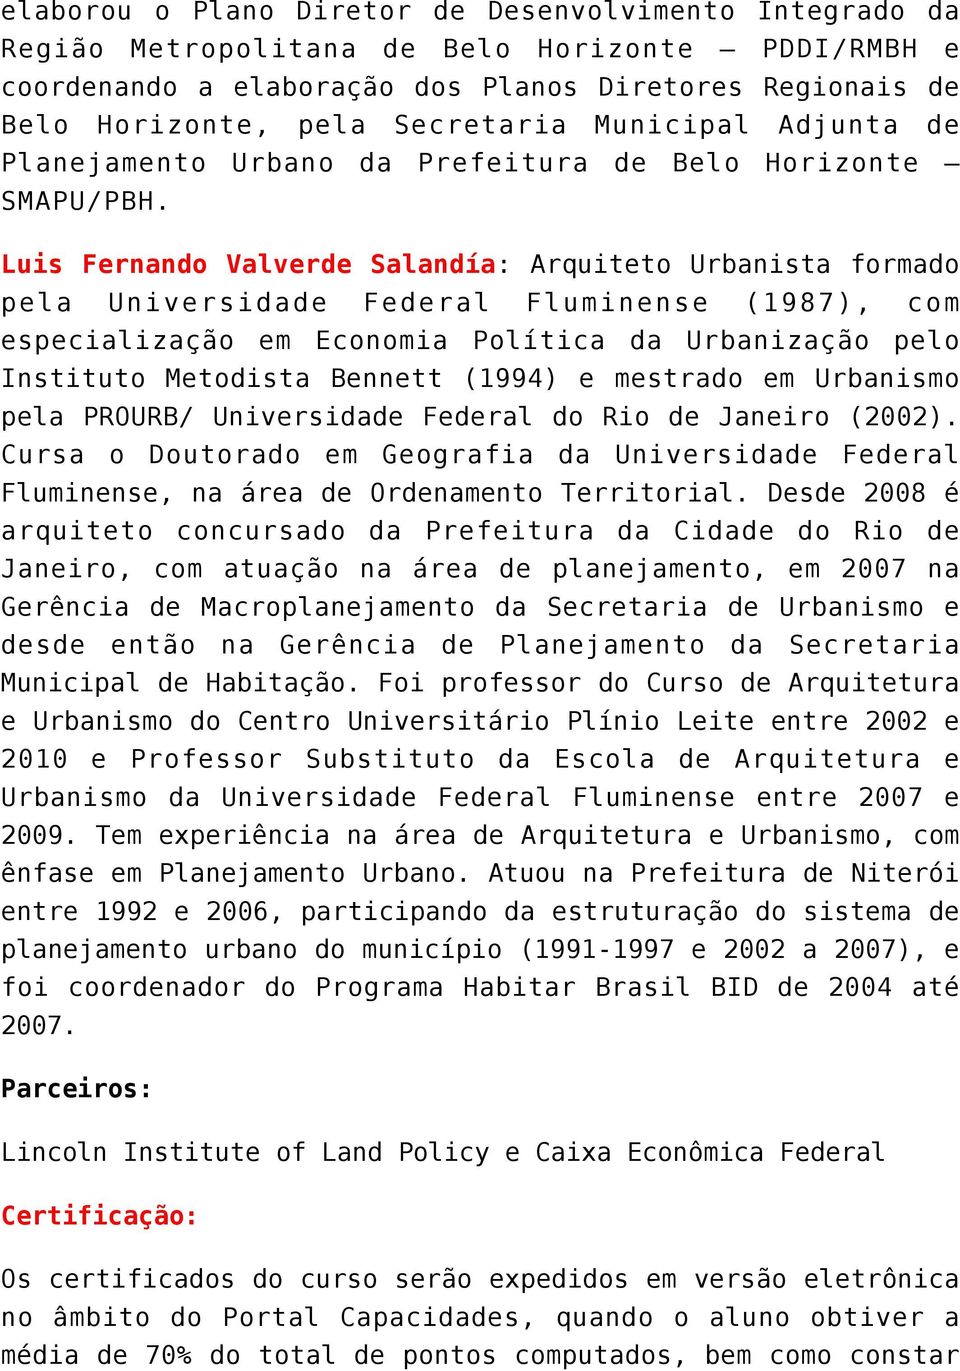 Luis Fernando Valverde Salandía: Arquiteto Urbanista formado pela Universidade Federal Fluminense (1987), com especialização em Economia Política da Urbanização pelo Instituto Metodista Bennett